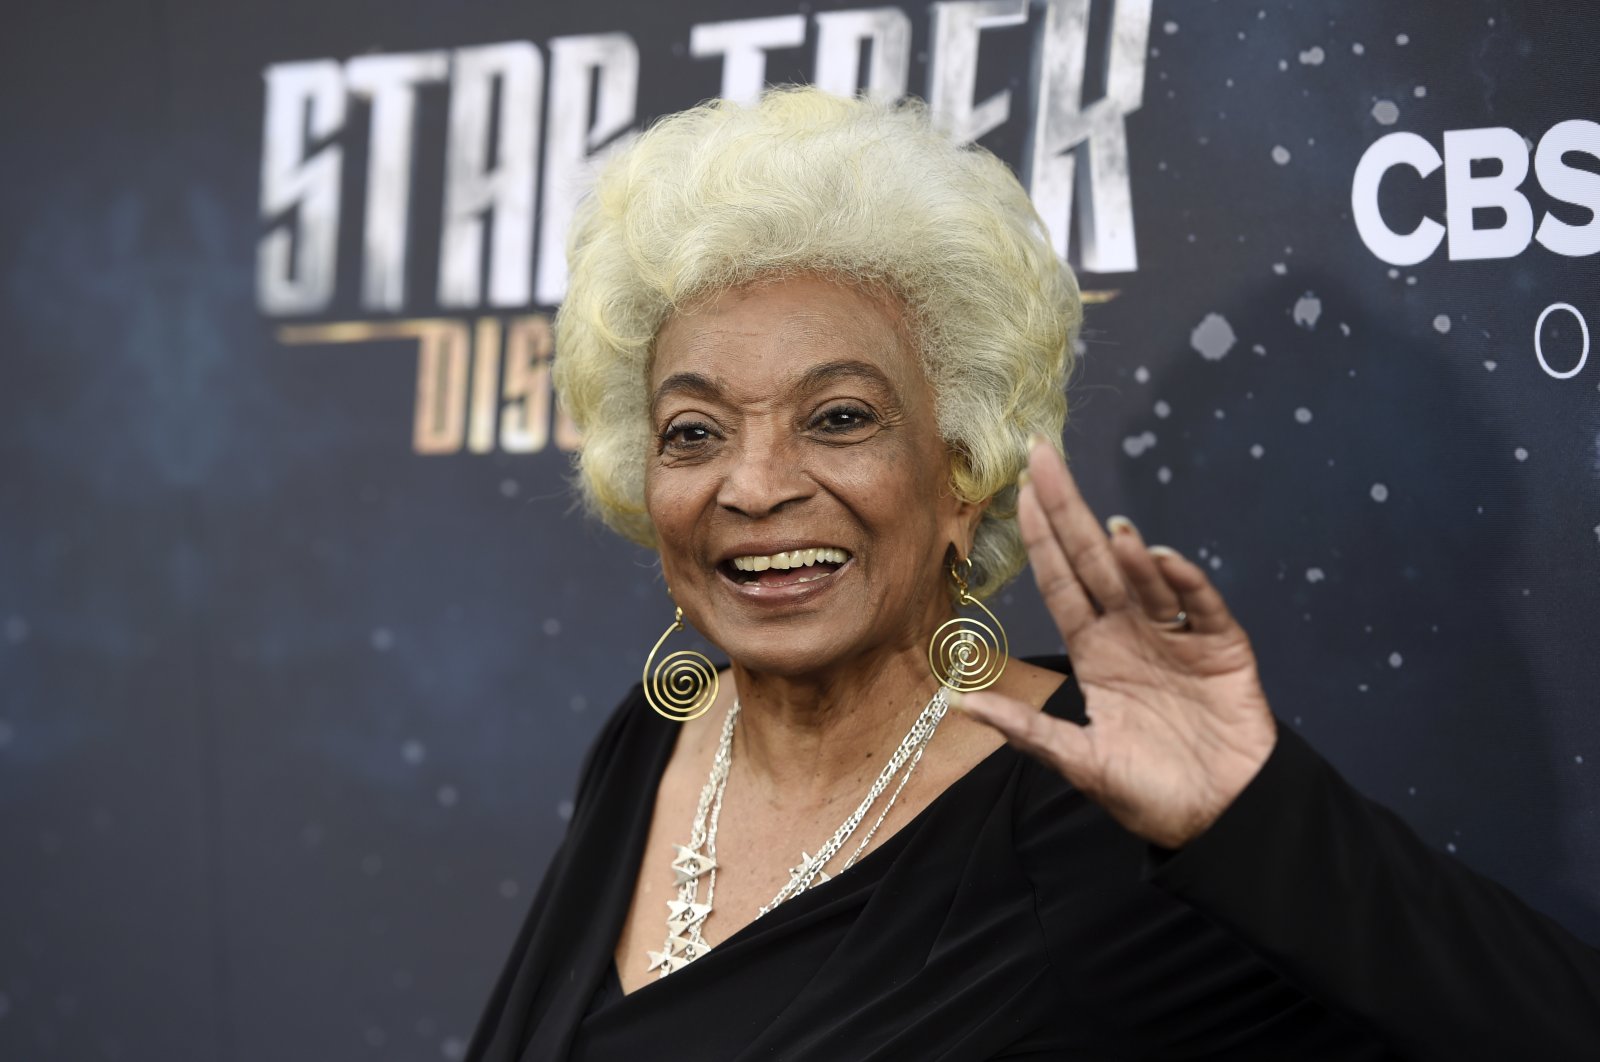 Abu aktris ‘Star Trek’ akan dibuang ke orbit matahari